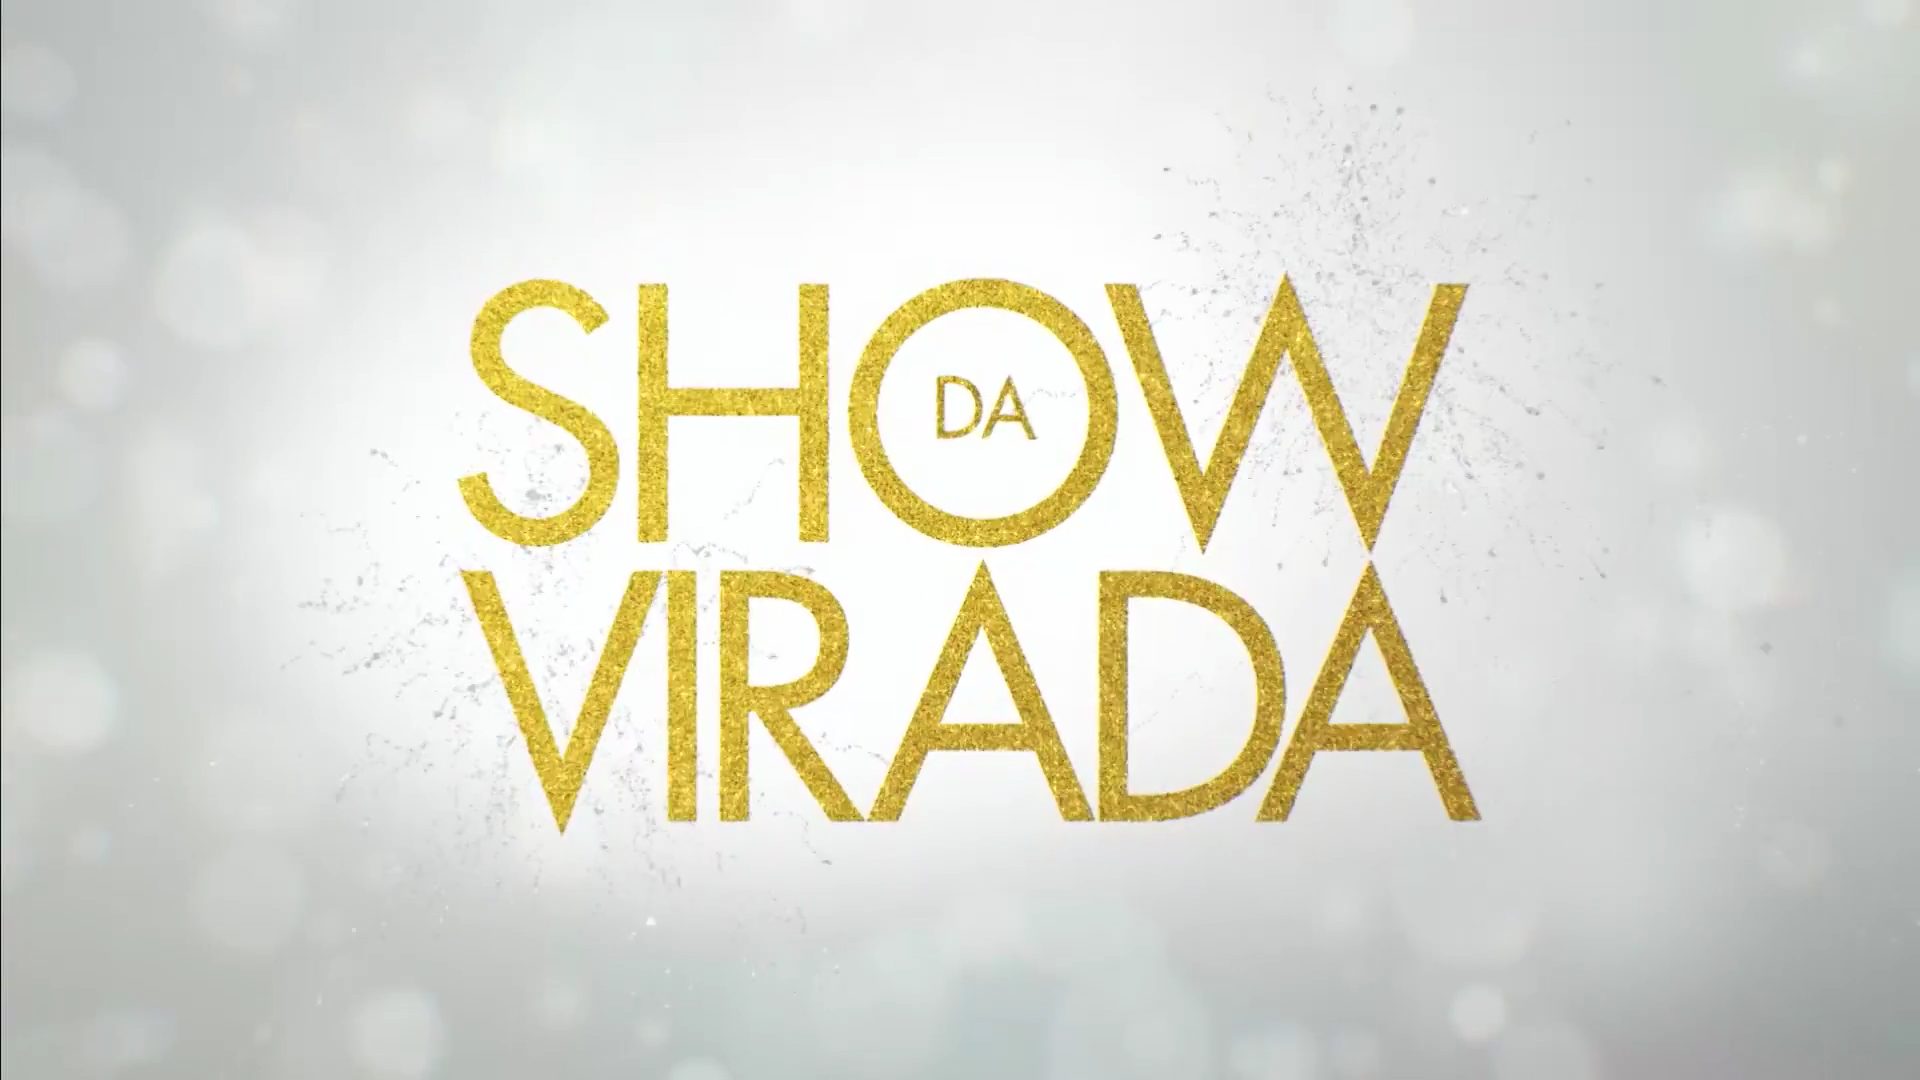 Show da Virada